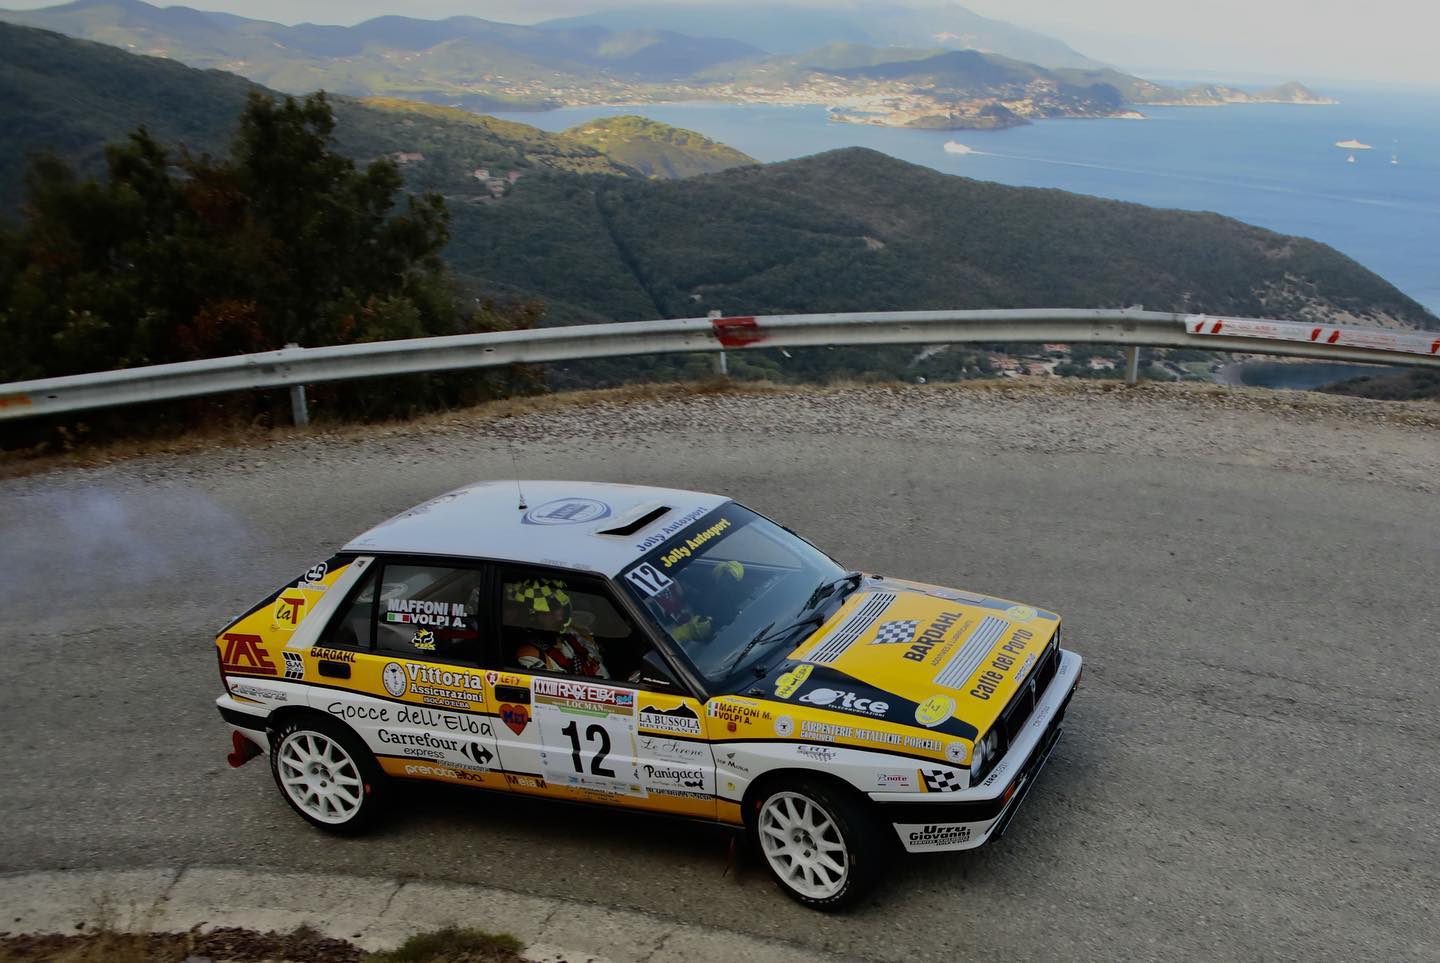 Le novità del 34° Rallye Elba Storico – Trofeo Locman Italy.